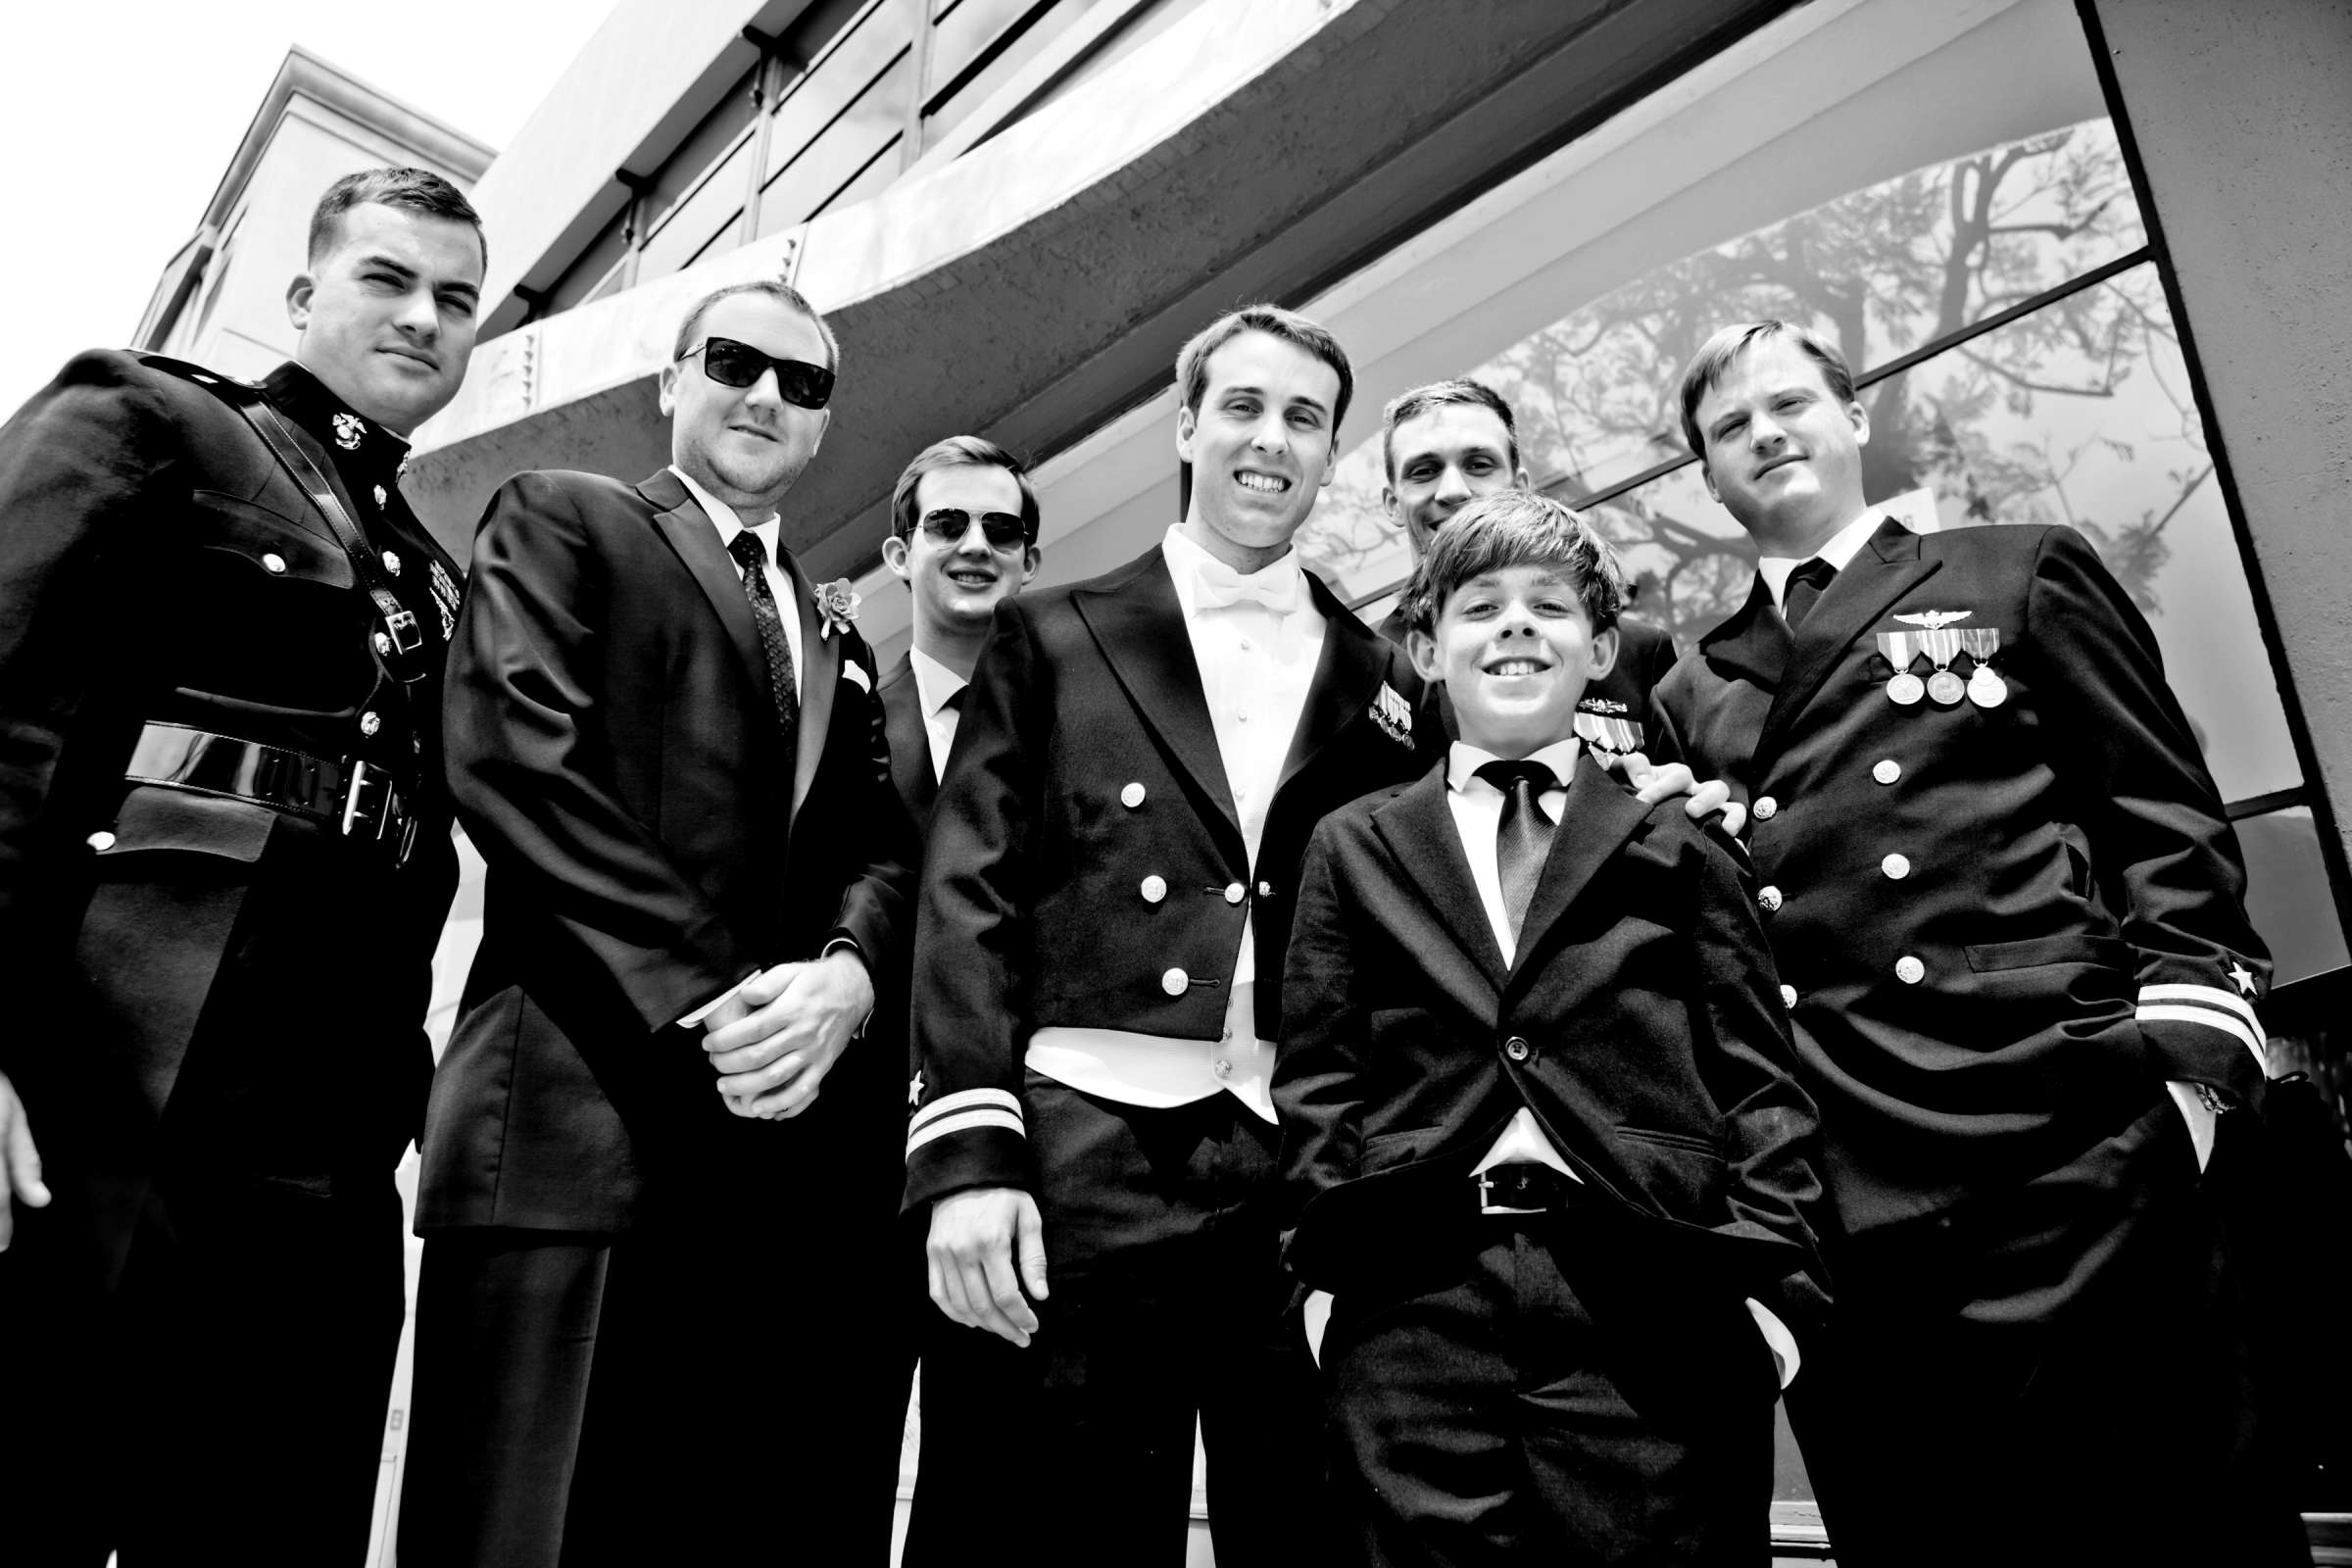 Admiral Kidd Club Wedding coordinated by I Do Weddings, Ashley and Rhett Wedding Photo #358450 by True Photography